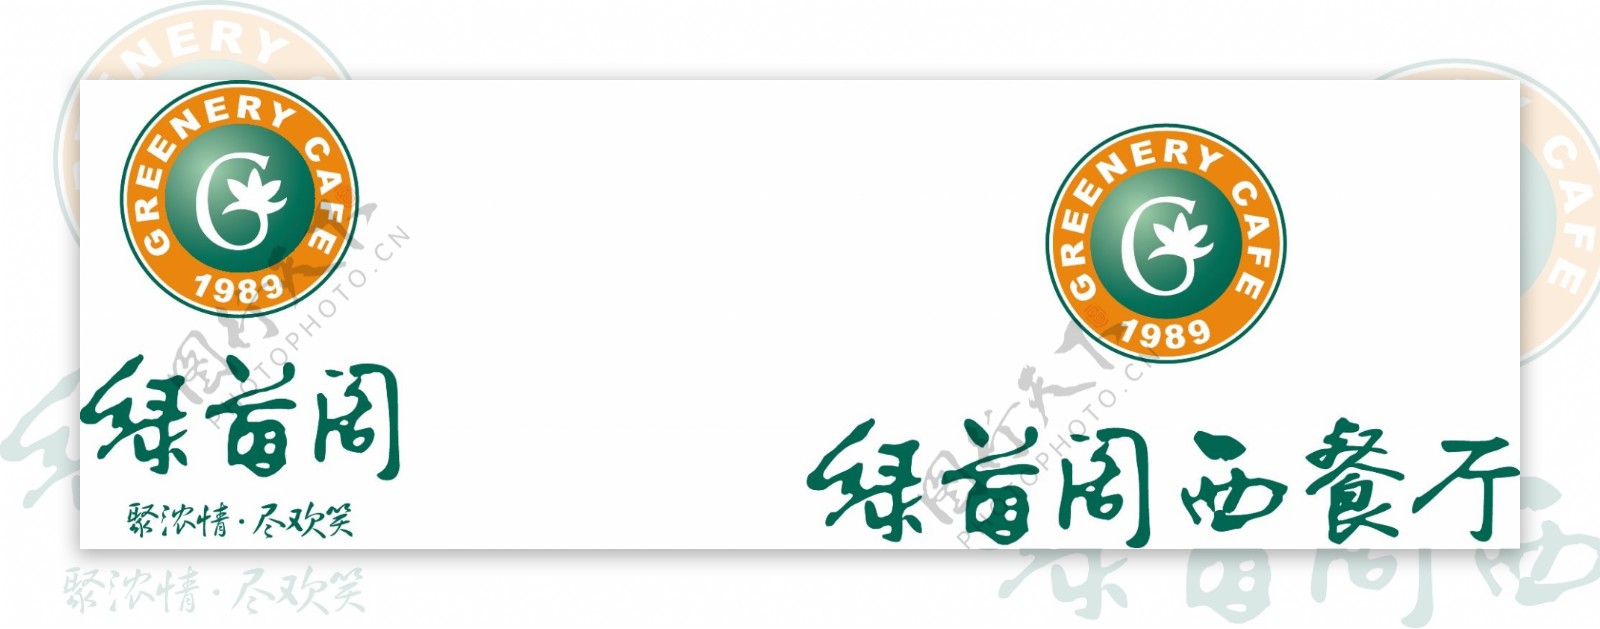 绿茵阁logo图片